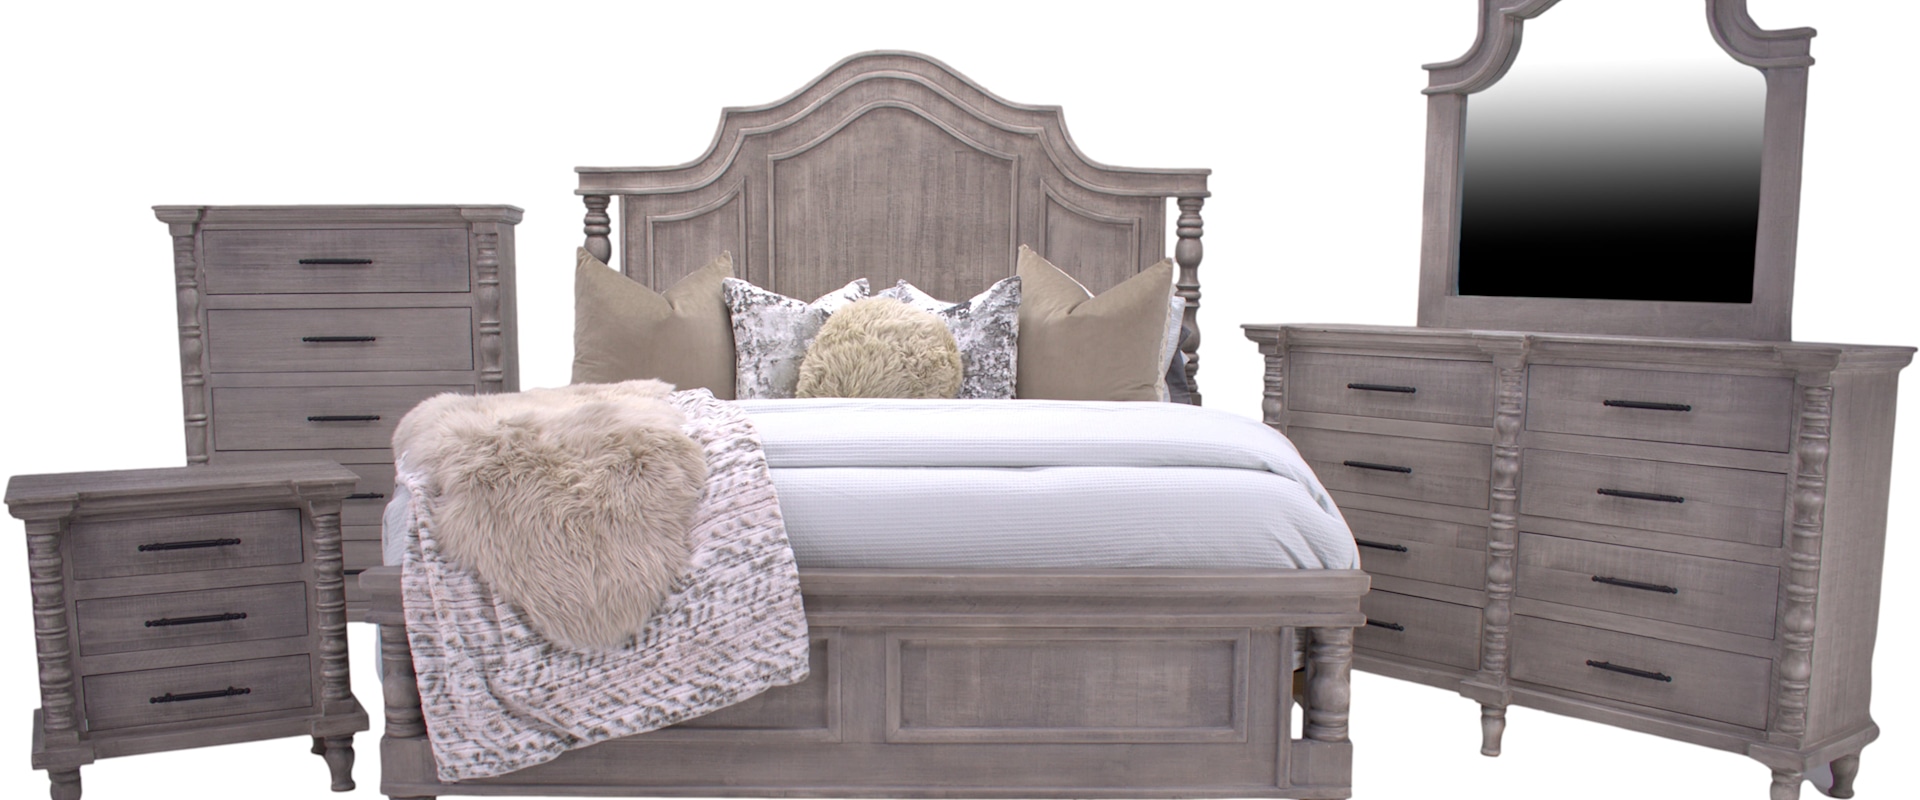 Faith Queen Bed, Dresser, Mirror & Nightstand